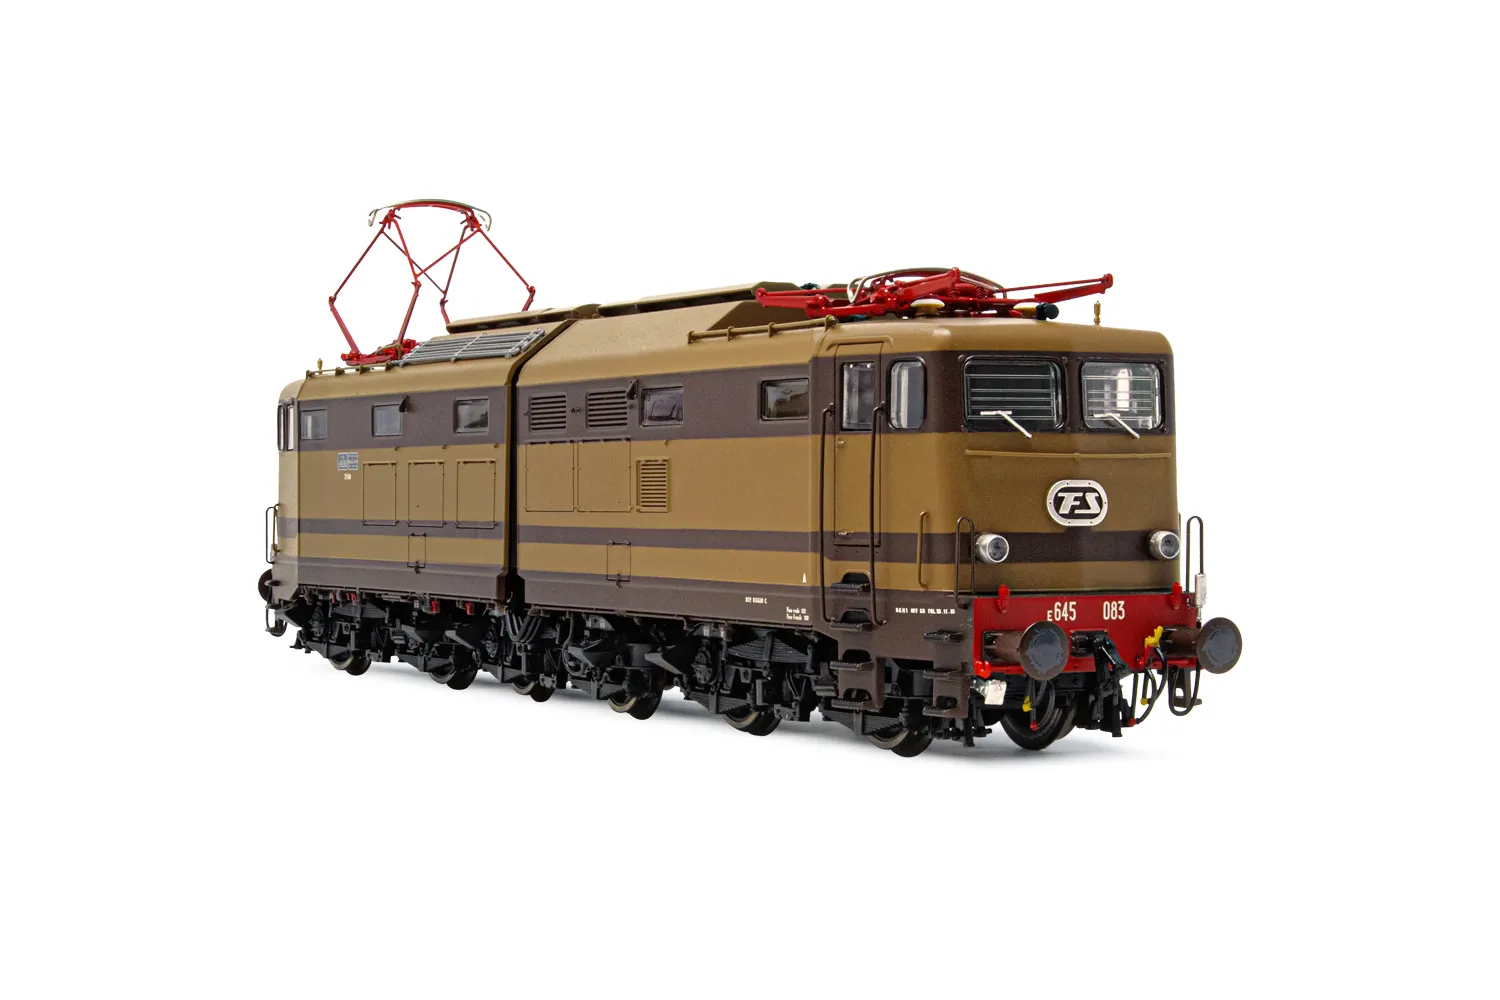 FS, locomotiva elettrica E.645, 2a serie, vetri frontali d'origine, livrea castano/isabella, ep. IV-V, con DCC Sound decoder